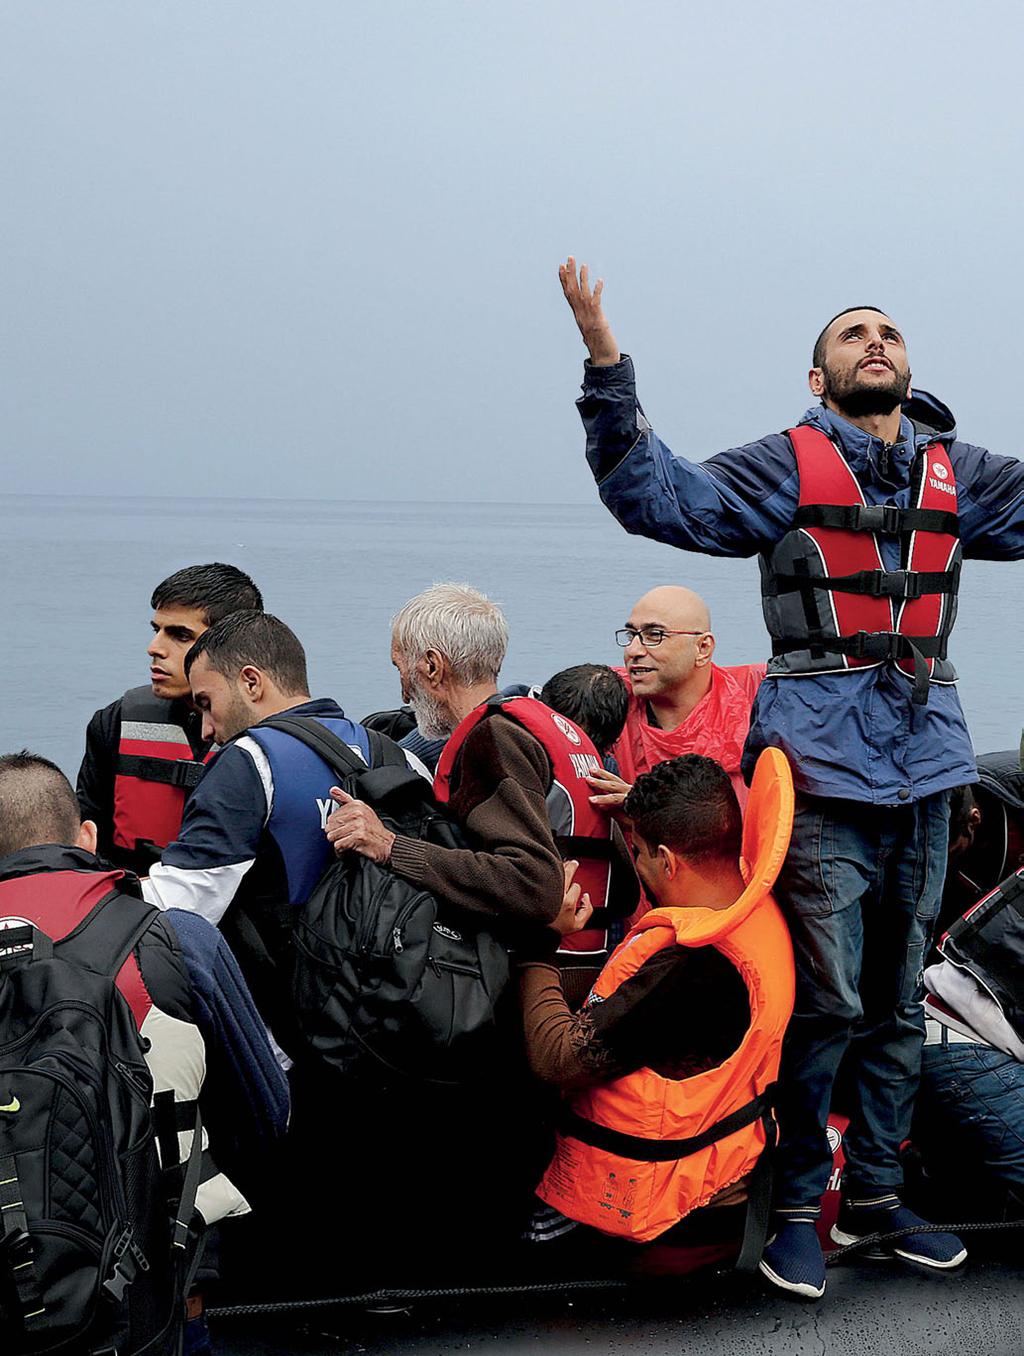 Καθώς η λέμβος πλησιάζει τη Λέσβο, ένας σύρος πρόσφυγας ευχαριστεί τον Θεό για την ασφαλή